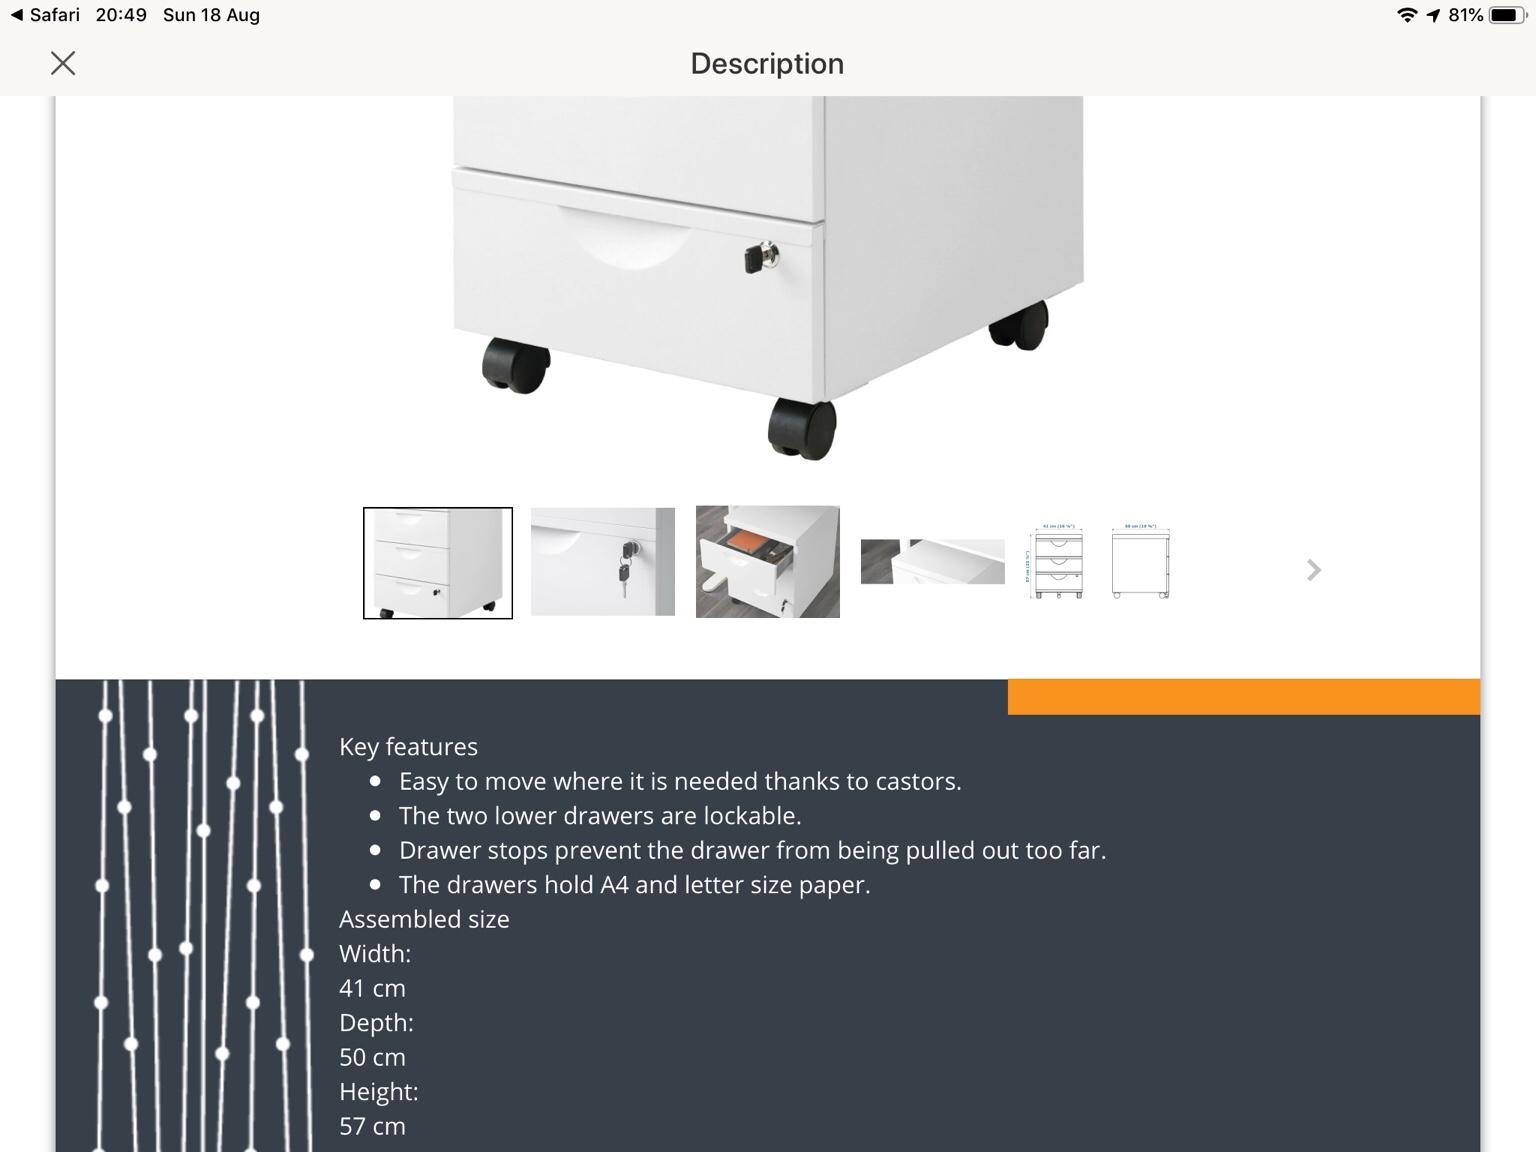 Ikea 3 Drawer Metal Filing Cabinet On Castors In Sk3 Stockport Fur